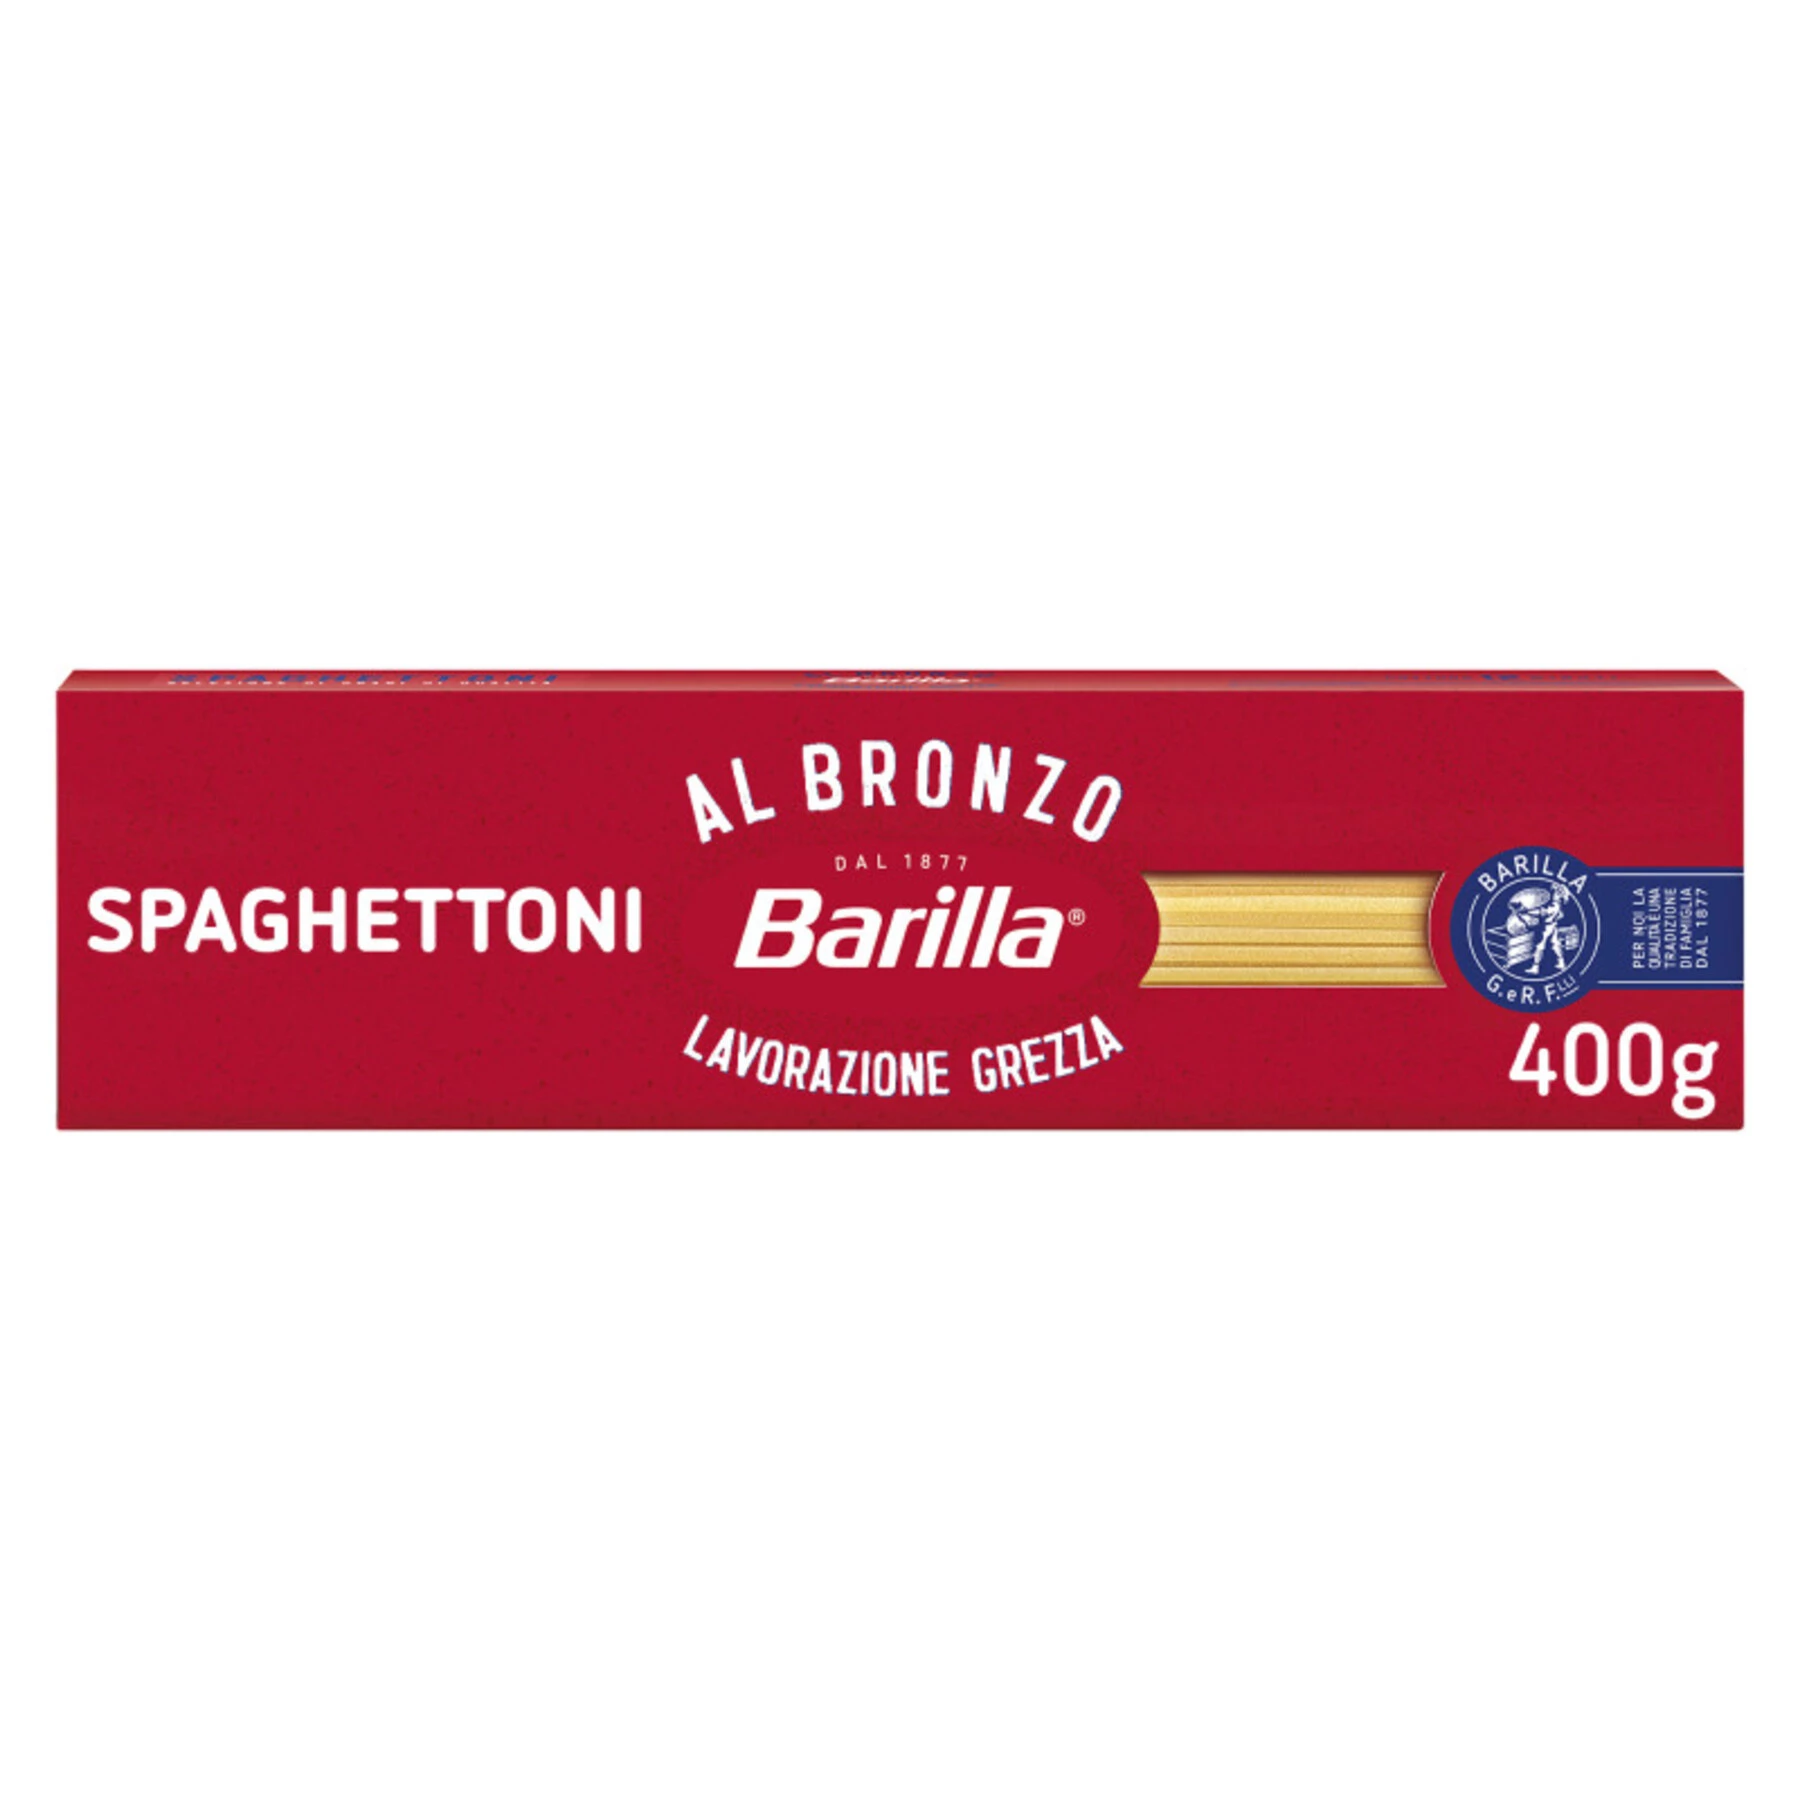 पैटे स्पेगेटोनी कांस्य, 400 ग्राम - बैरिला